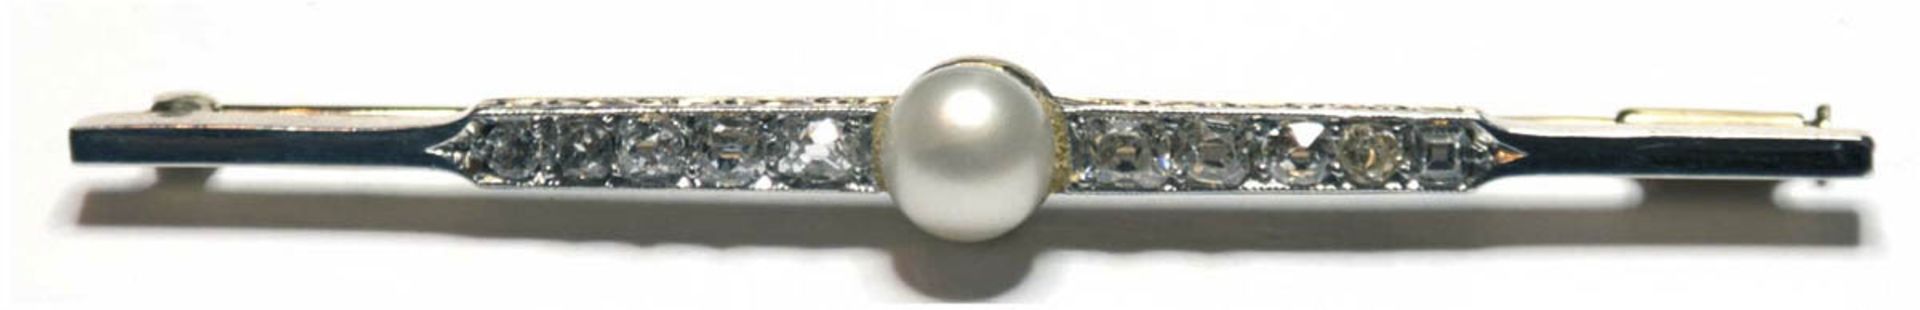 Nadel, 750er GG, in Reihe besetzt mit Diamanten (Rosen und Altschliff), mittig Perle,Ges.-Gew. 5,1